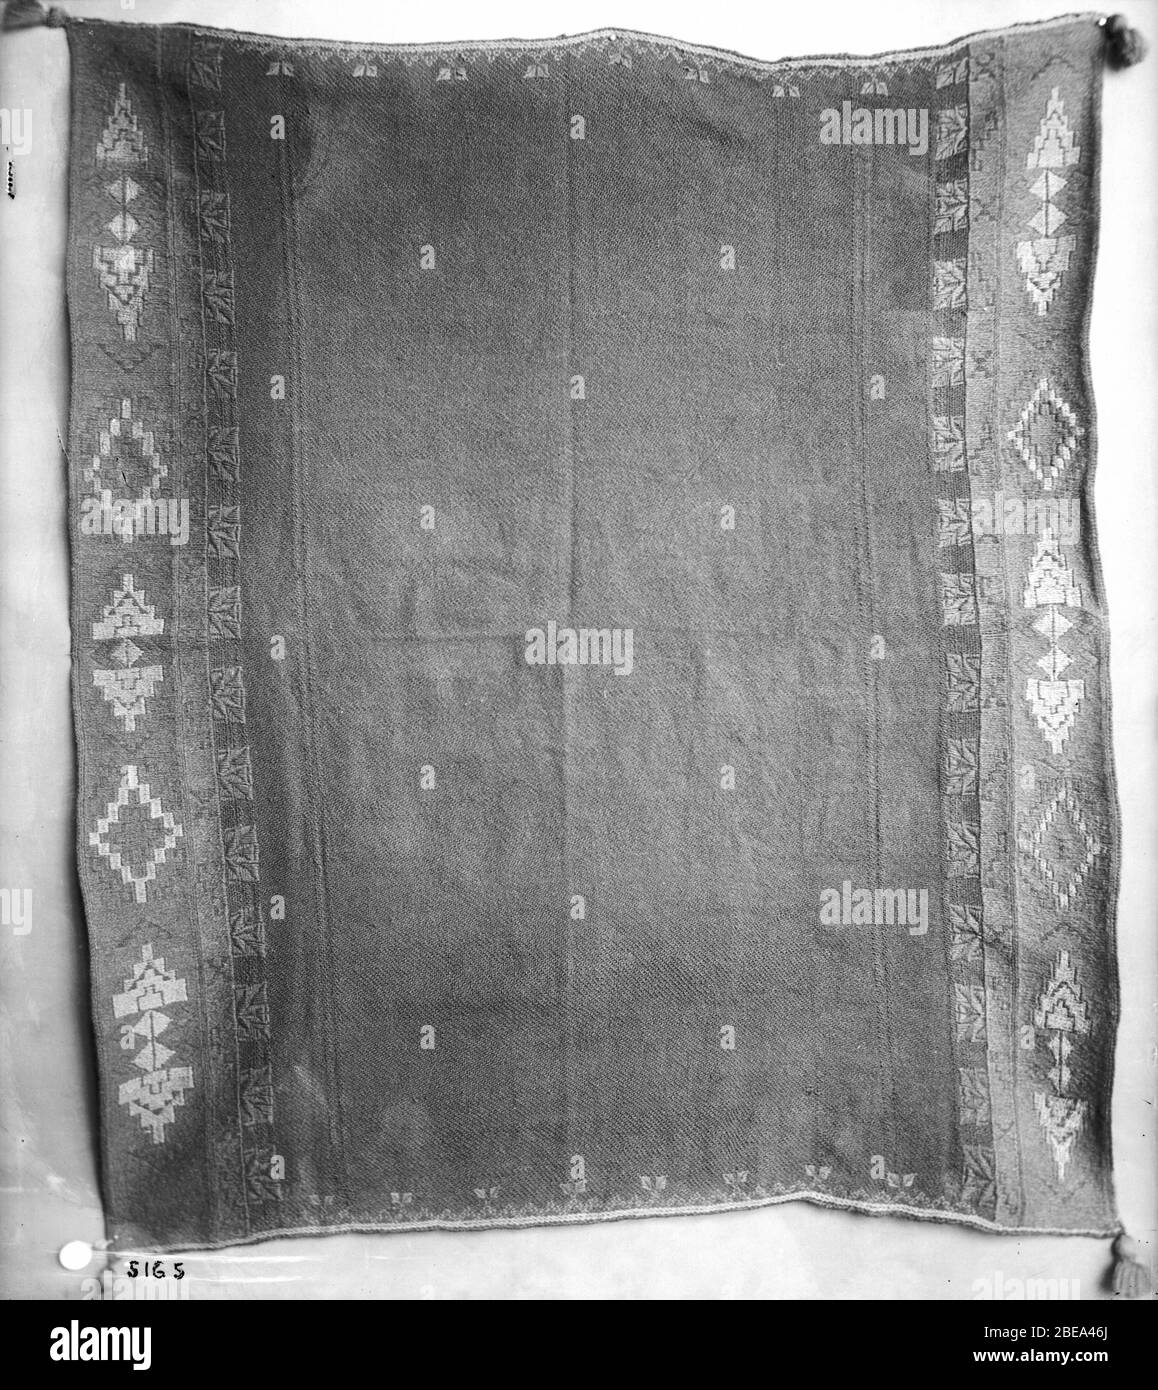 Englisch: Ein Acoma Squaw Kleid, das nur von Acoma Indianern gemacht wurde,  ca. 1898 Fotografie eines Acoma Squaw Kleides, das nur von Acoma Indianern  für Männer hergestellt wurde, ca. 1898. Die Decken